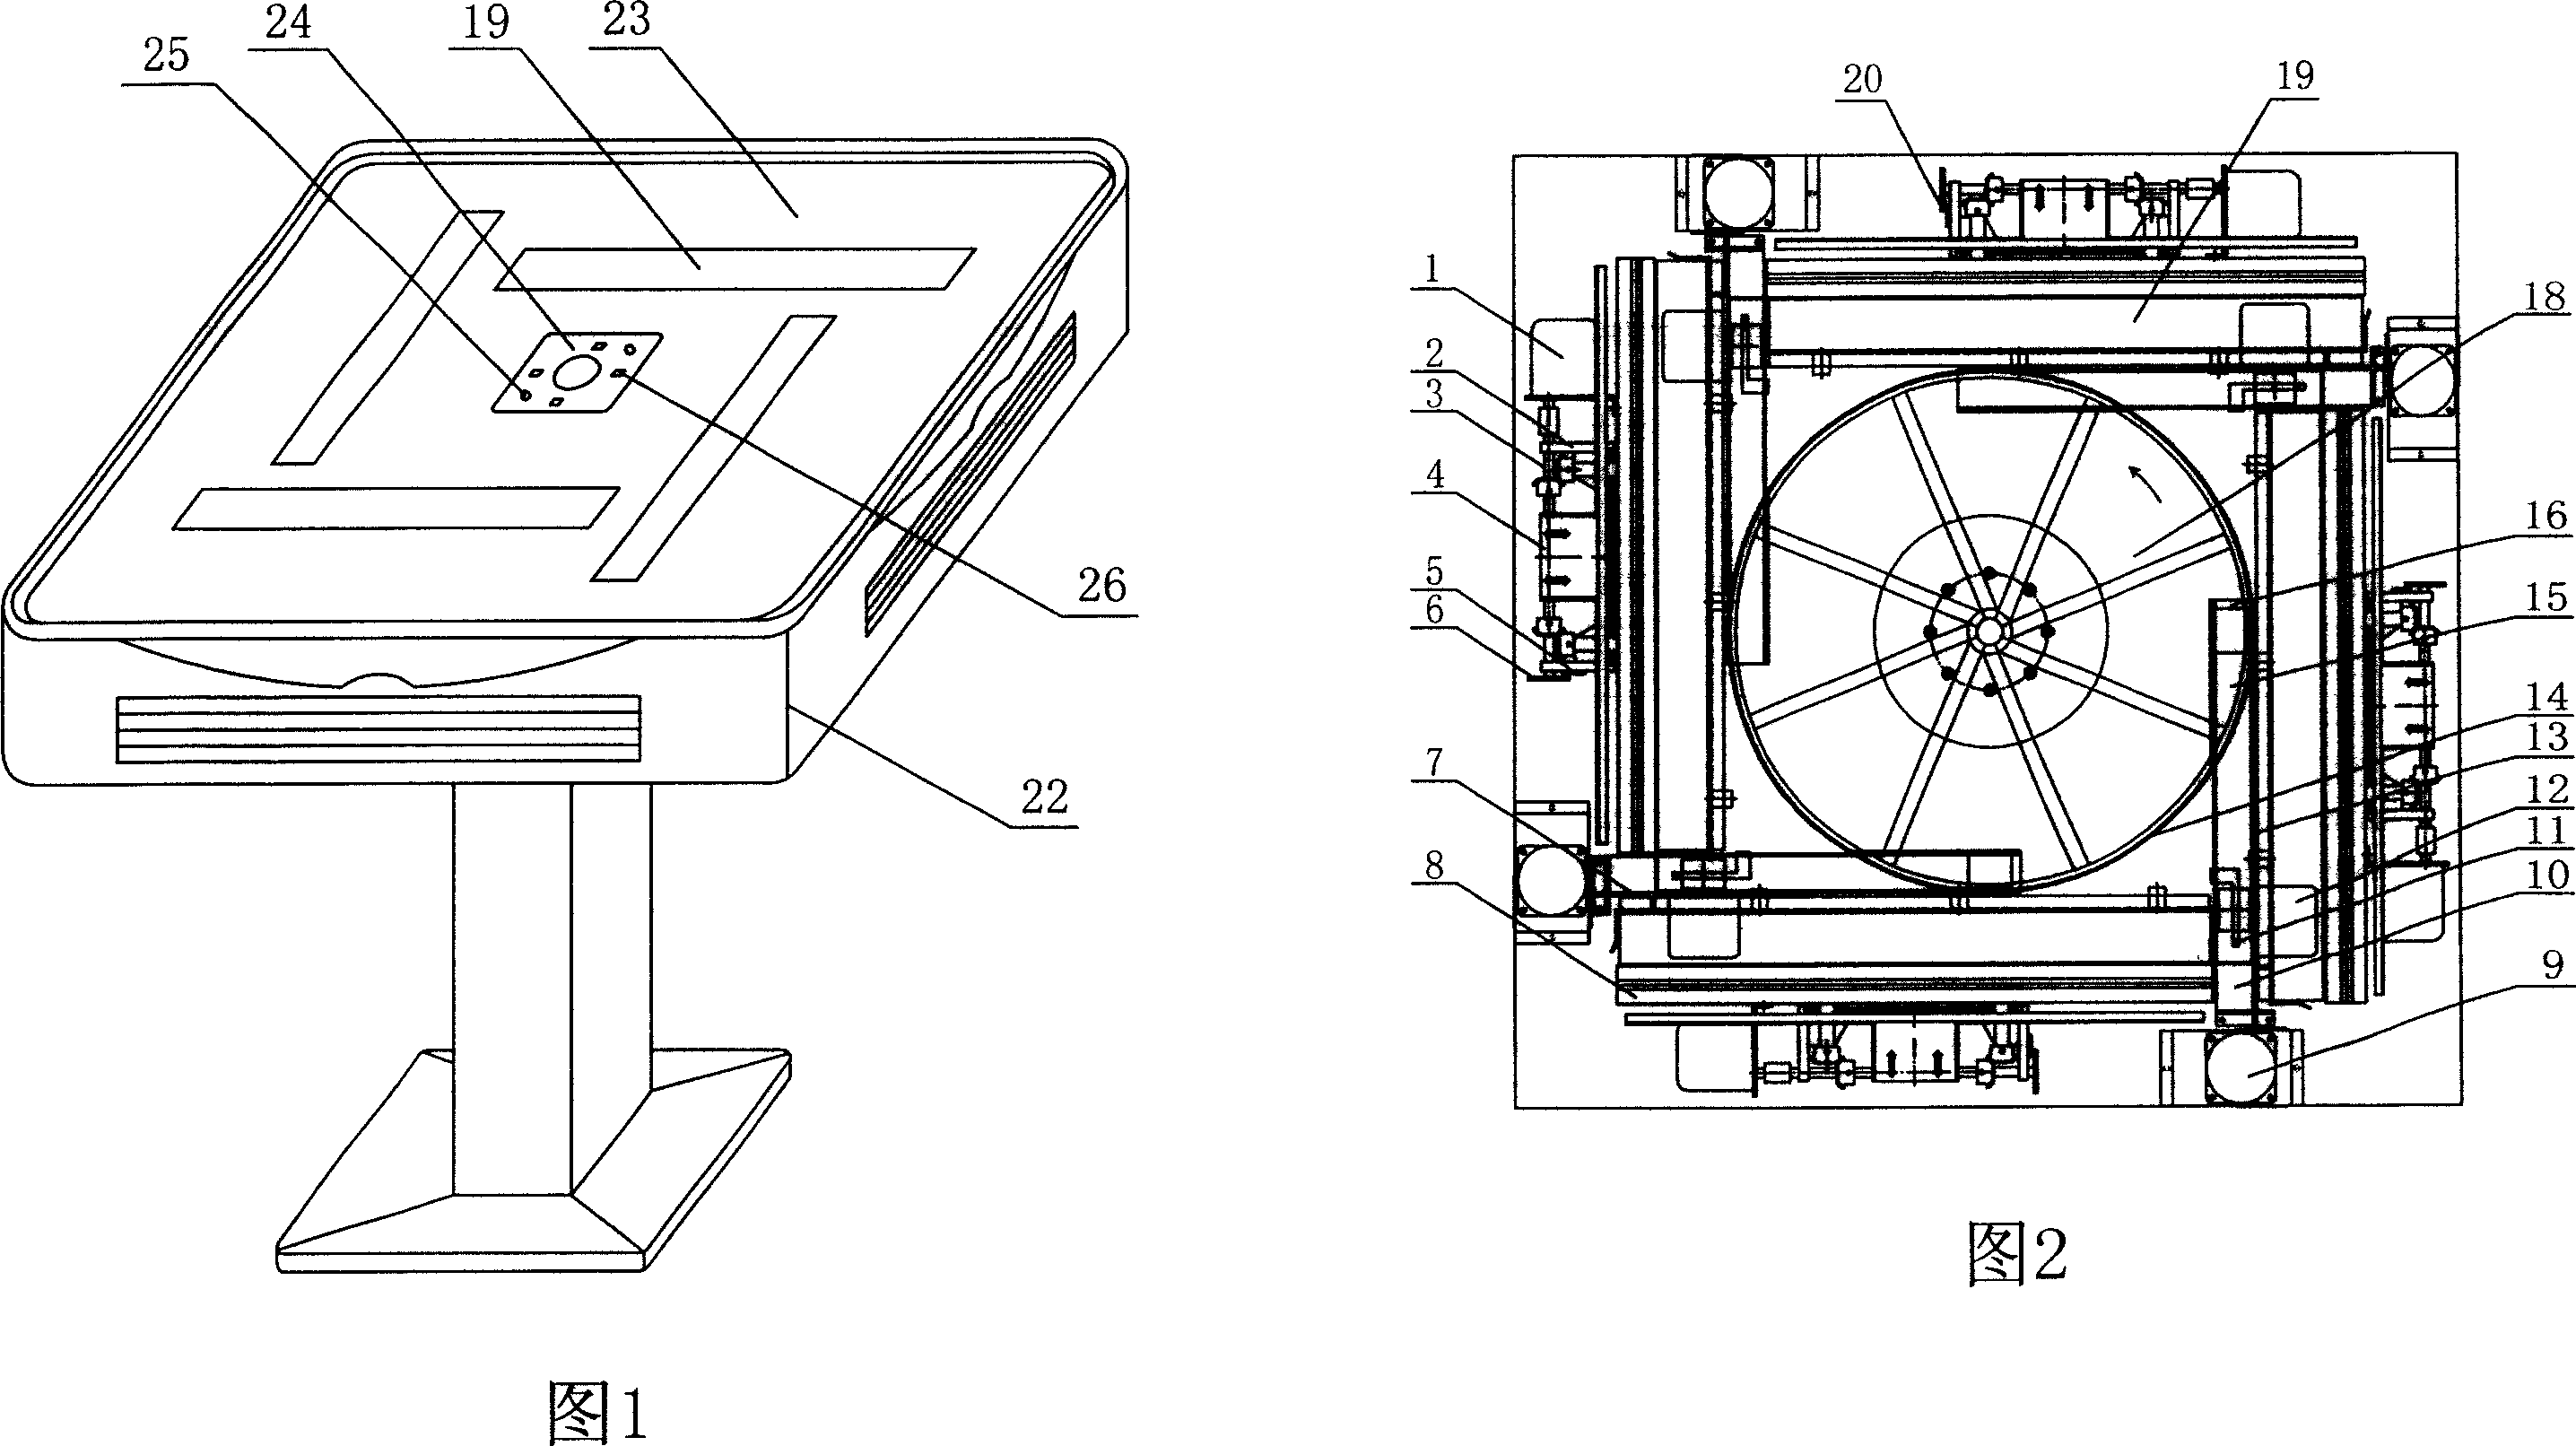 Automatic mah-jong machine